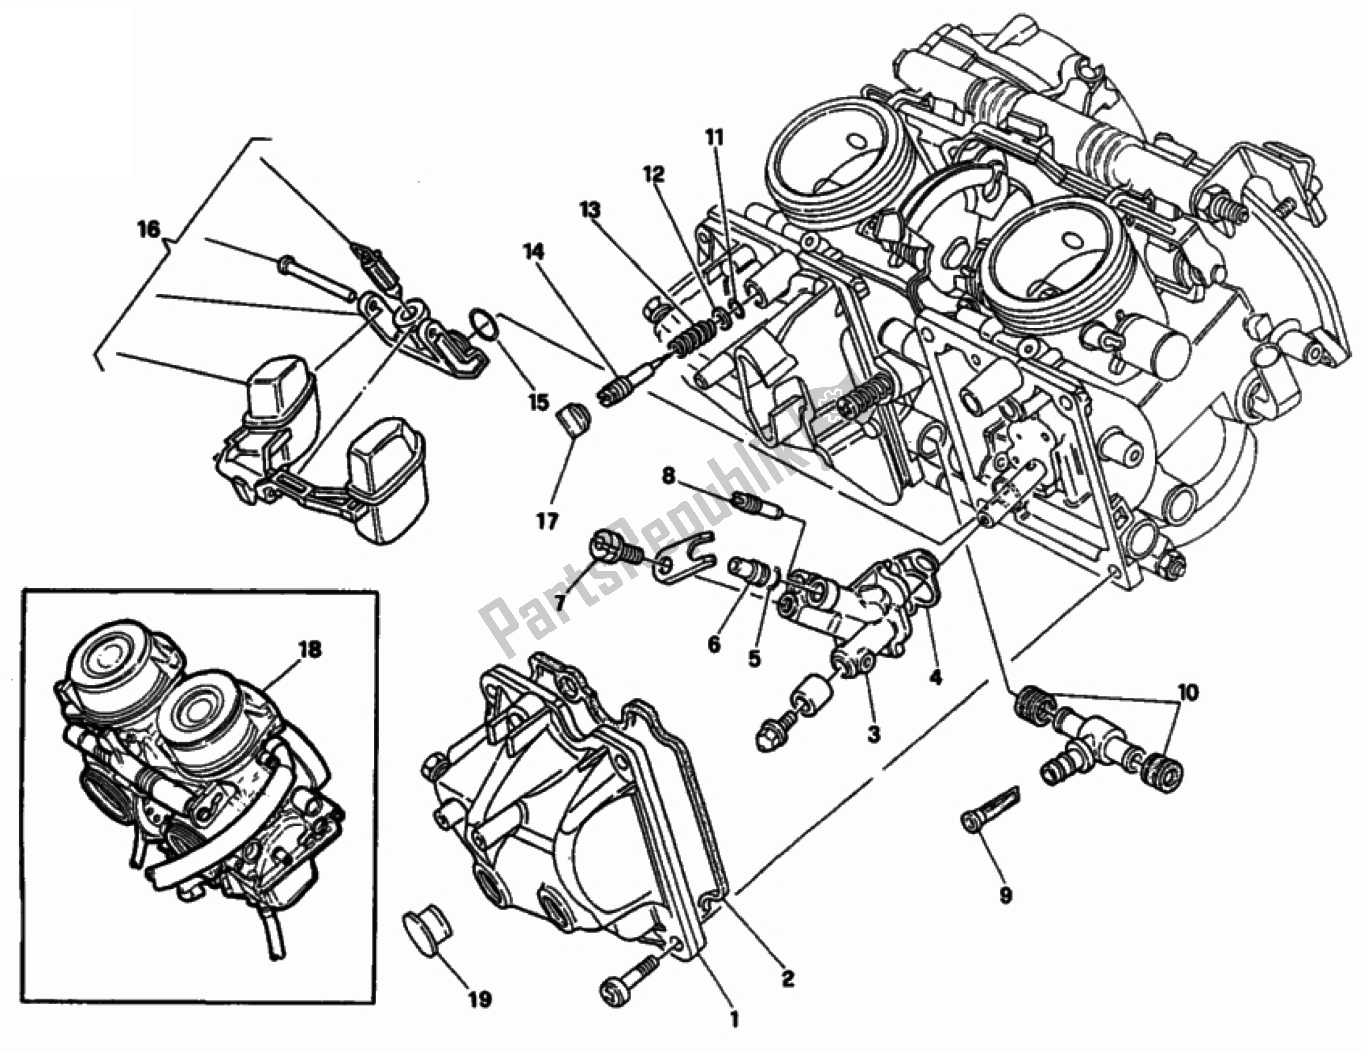 Toutes les pièces pour le Carburateur du Ducati Monster 900 1996 - 2000